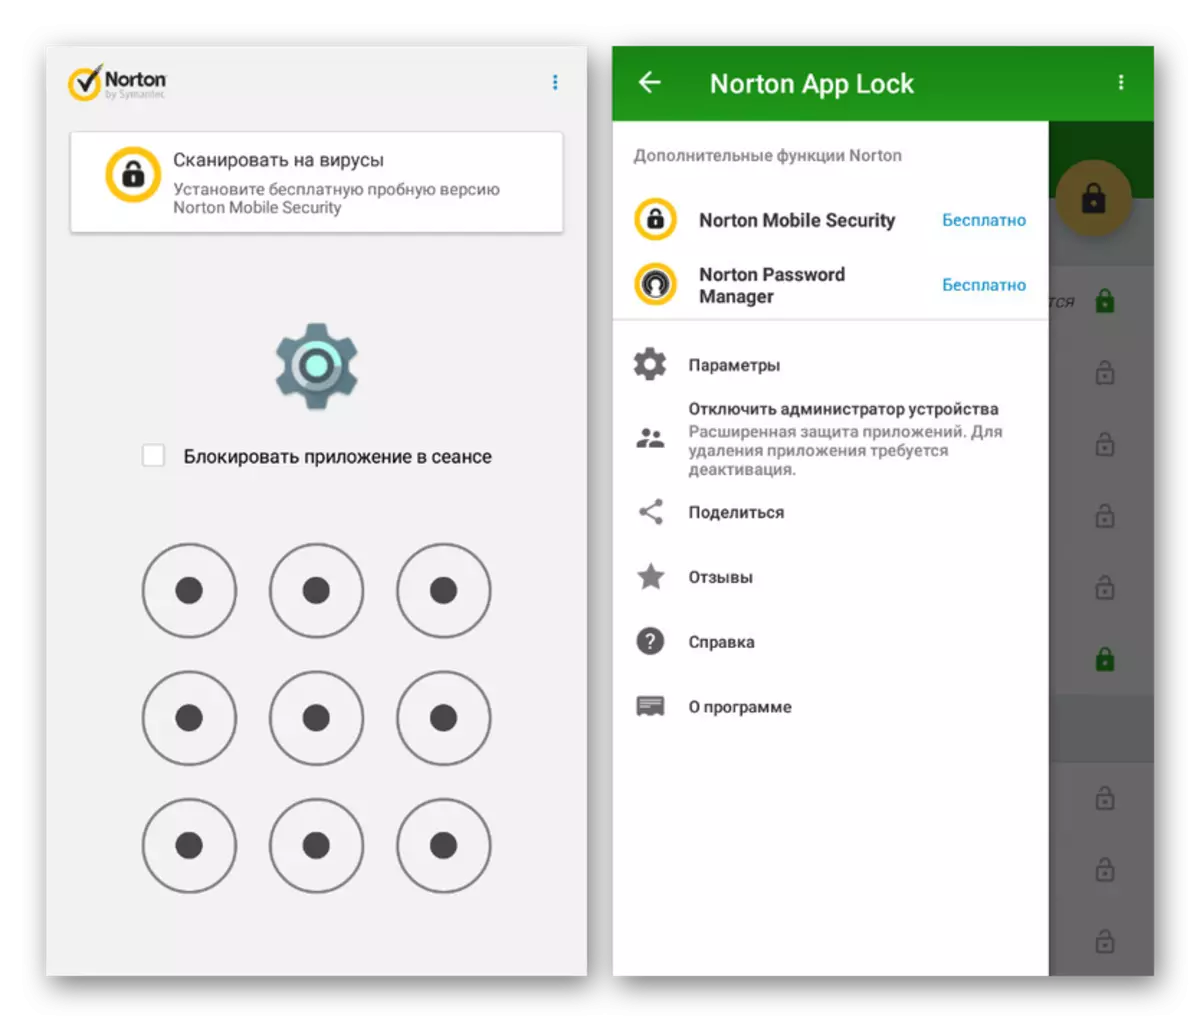 Conferma nel blocco dell'app Norton su Android